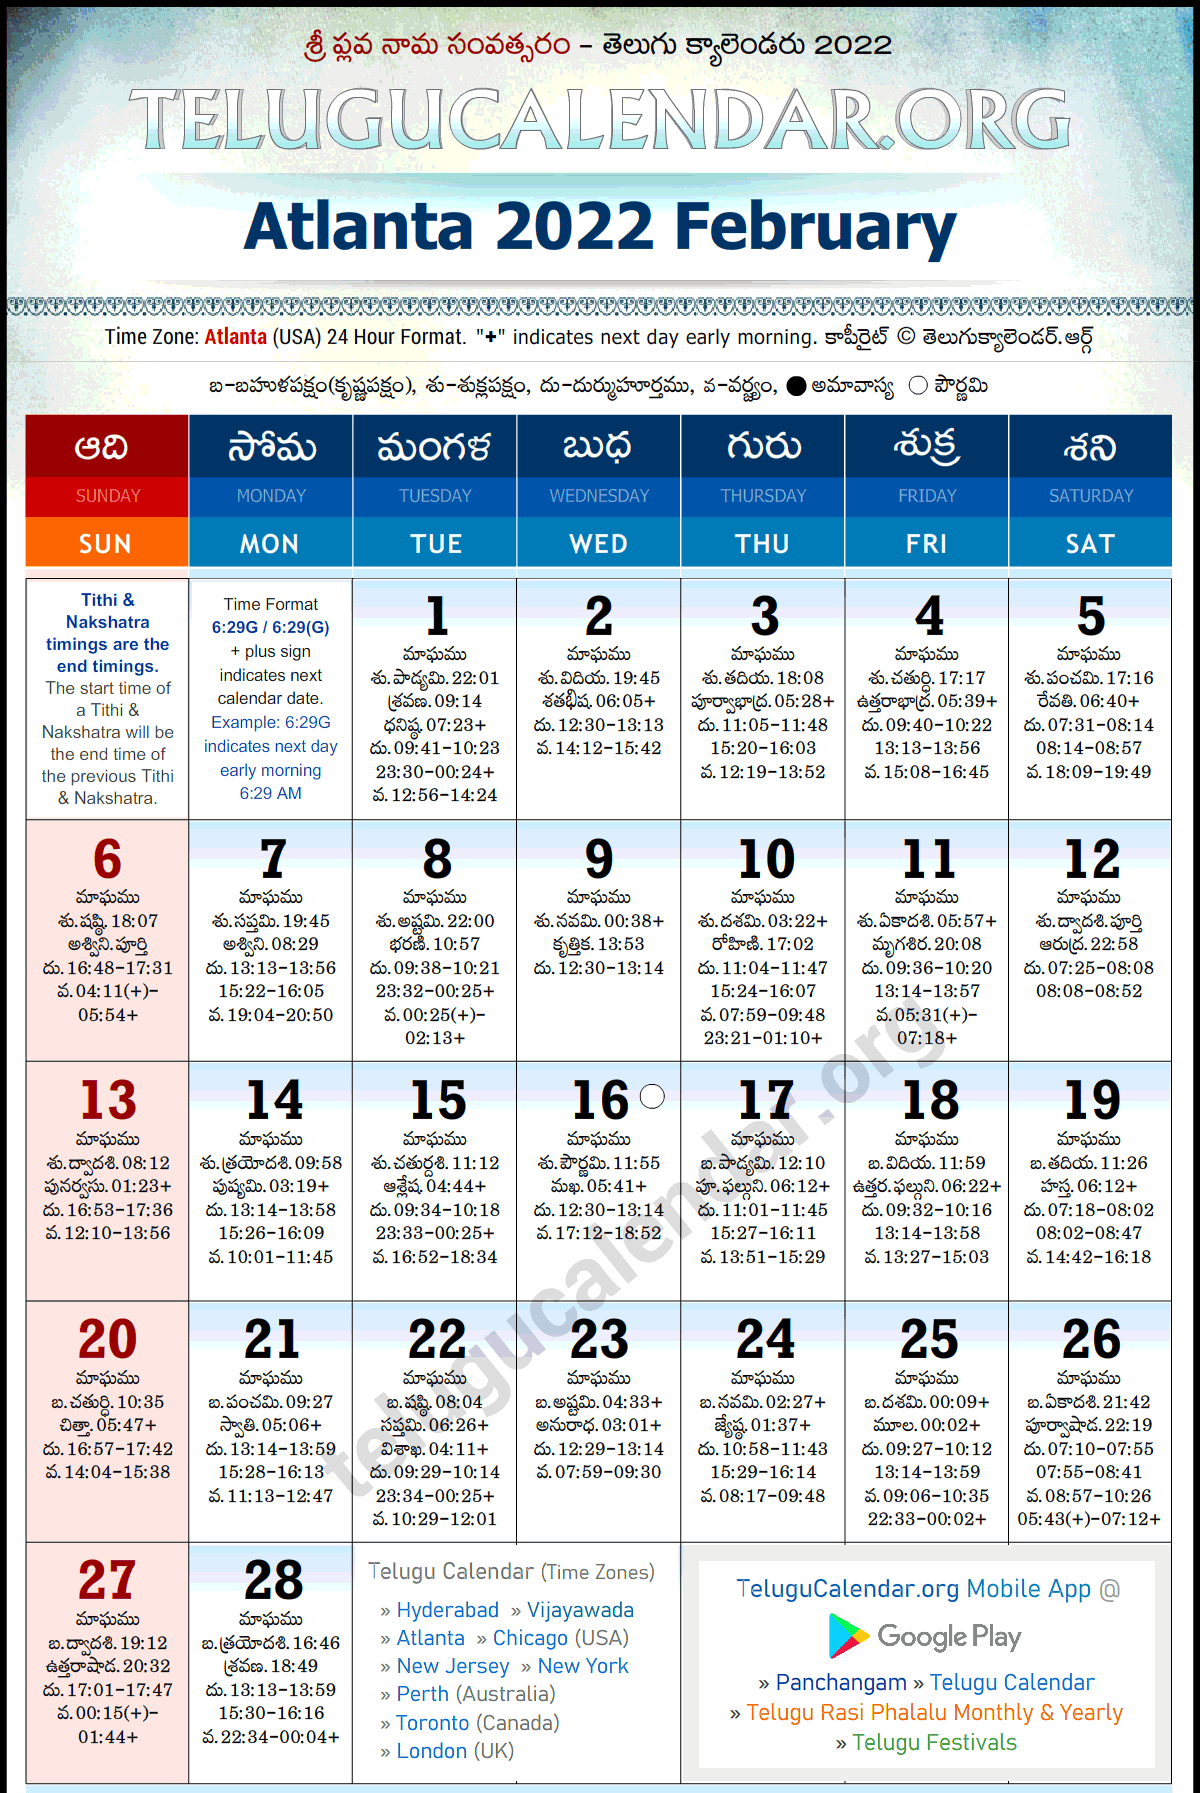 Catch Hindu Calendar 2022 March